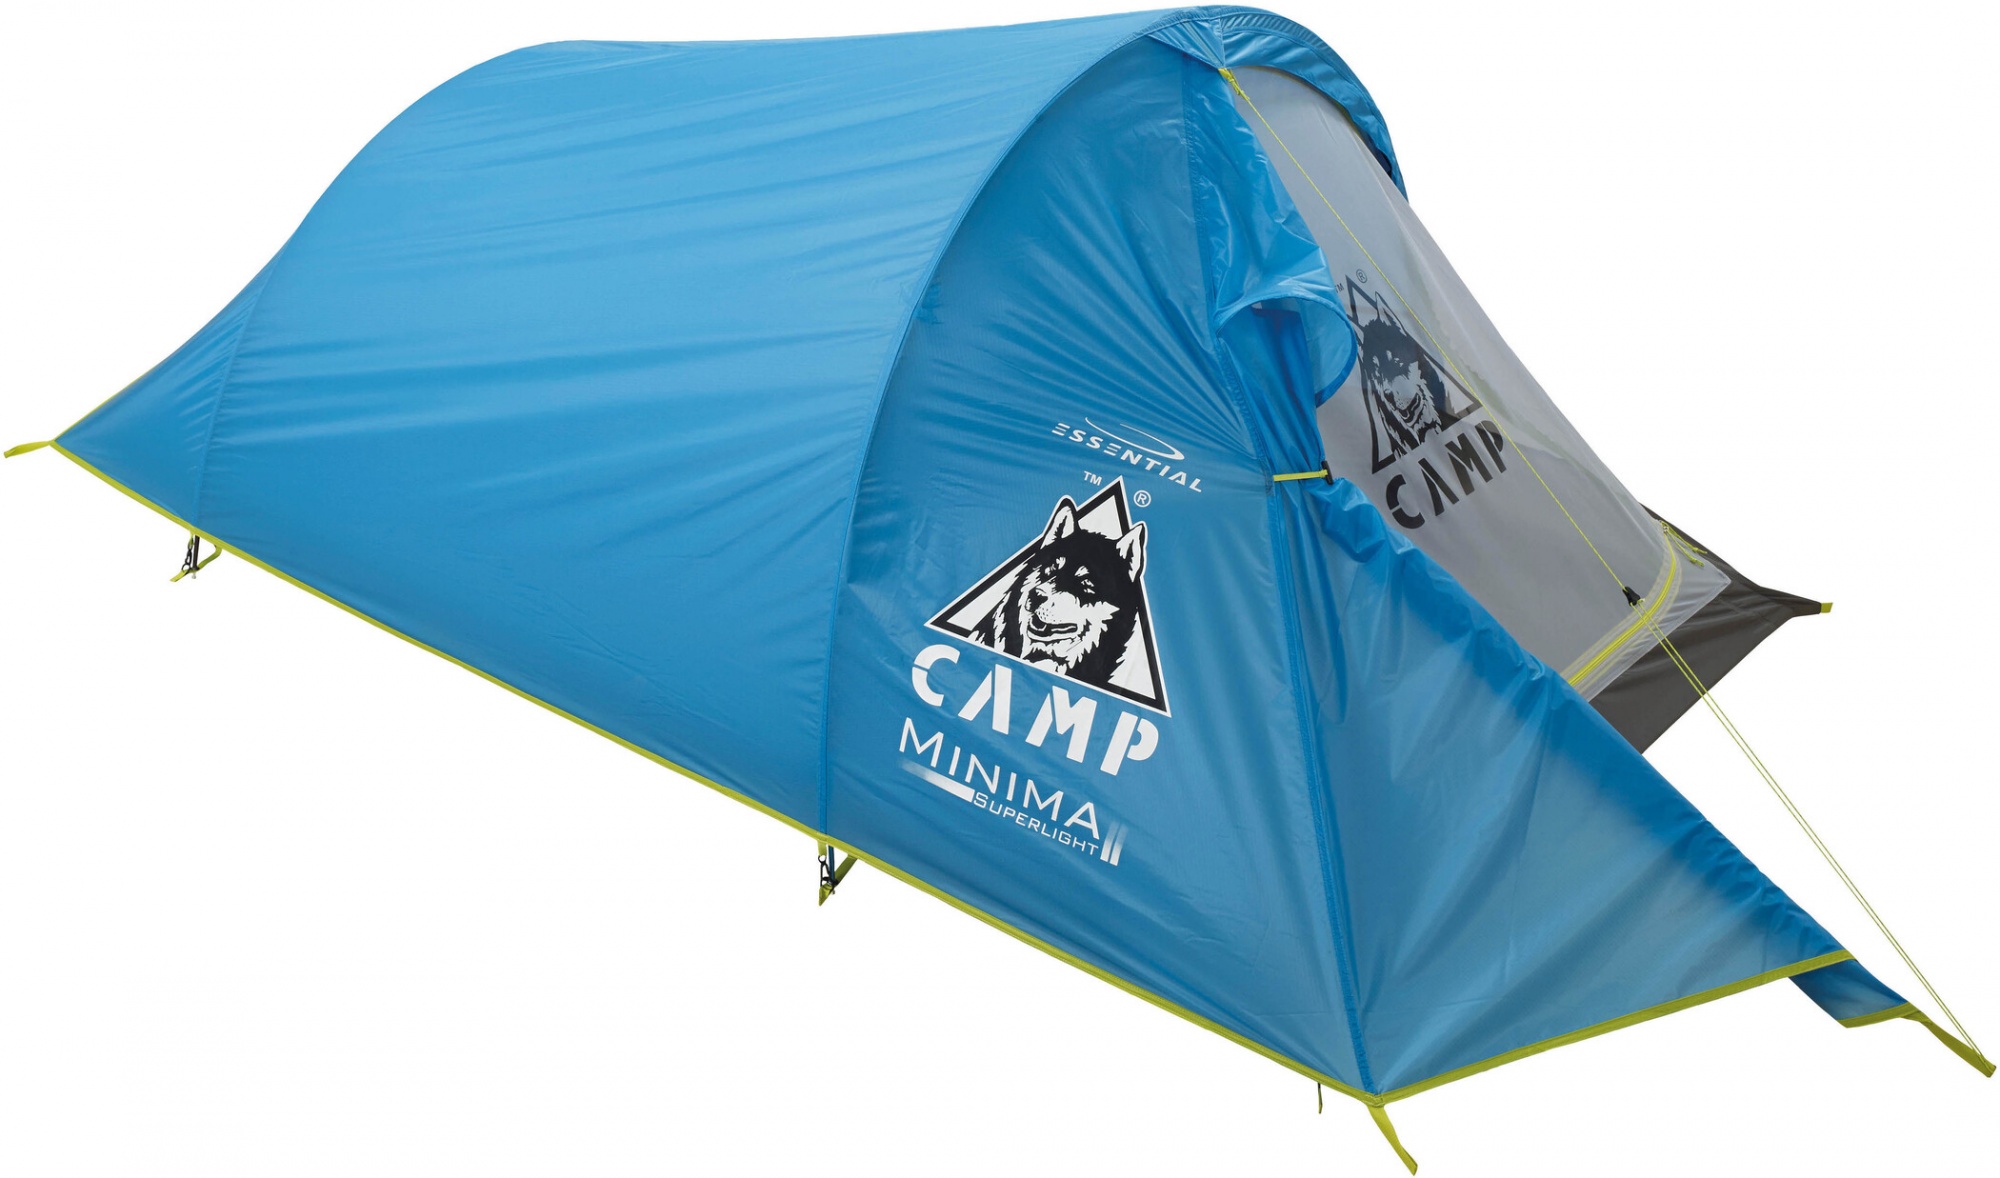 Камп 2. Палатка Camp minima 2 SL. Палатка Camp minima 1 SL. Палатка Camp hike Spirit 2 Alu. Палатка Camp Nagoa v.